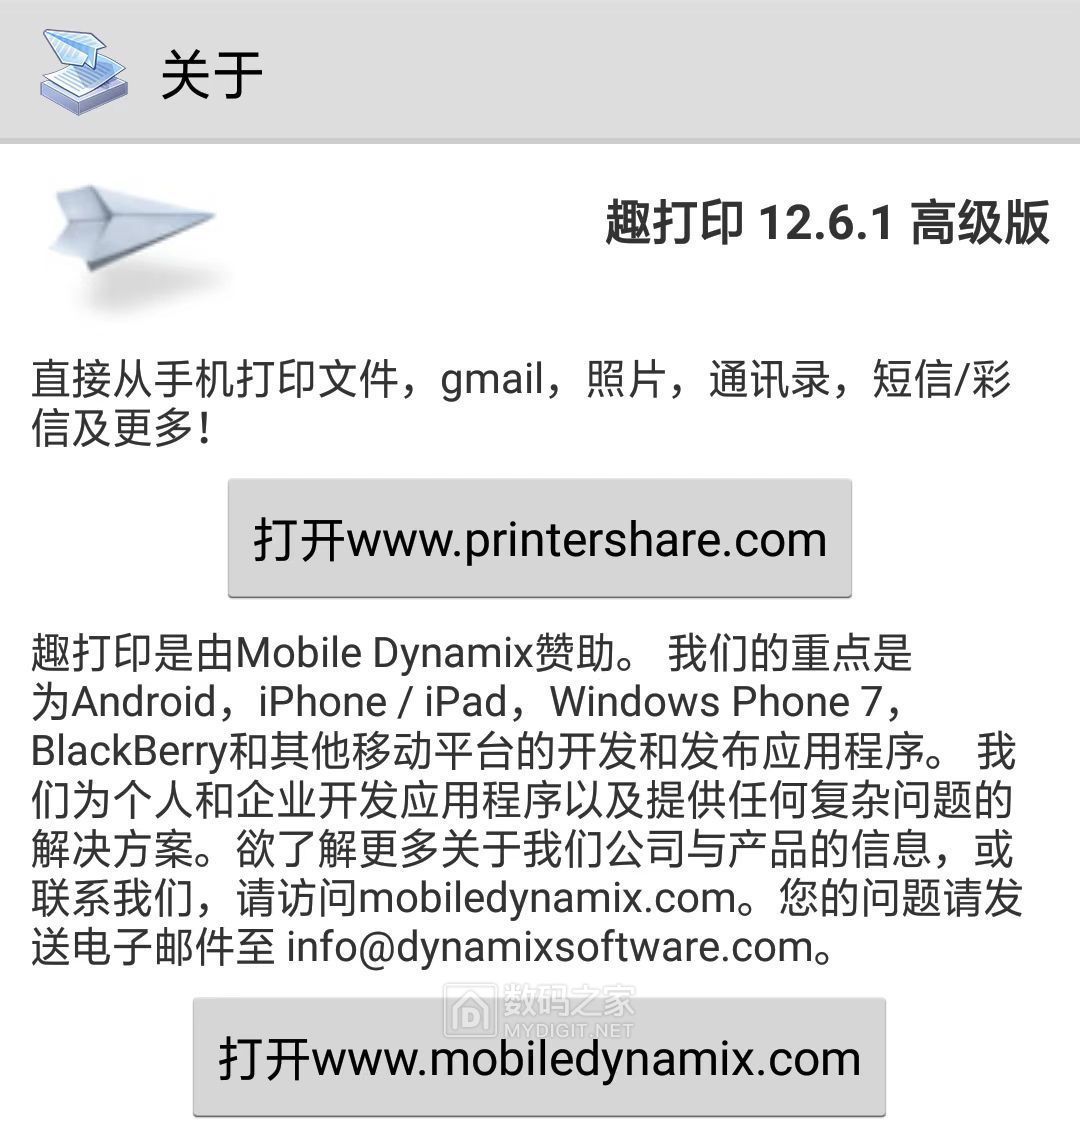 002 printershare 1261.jpg